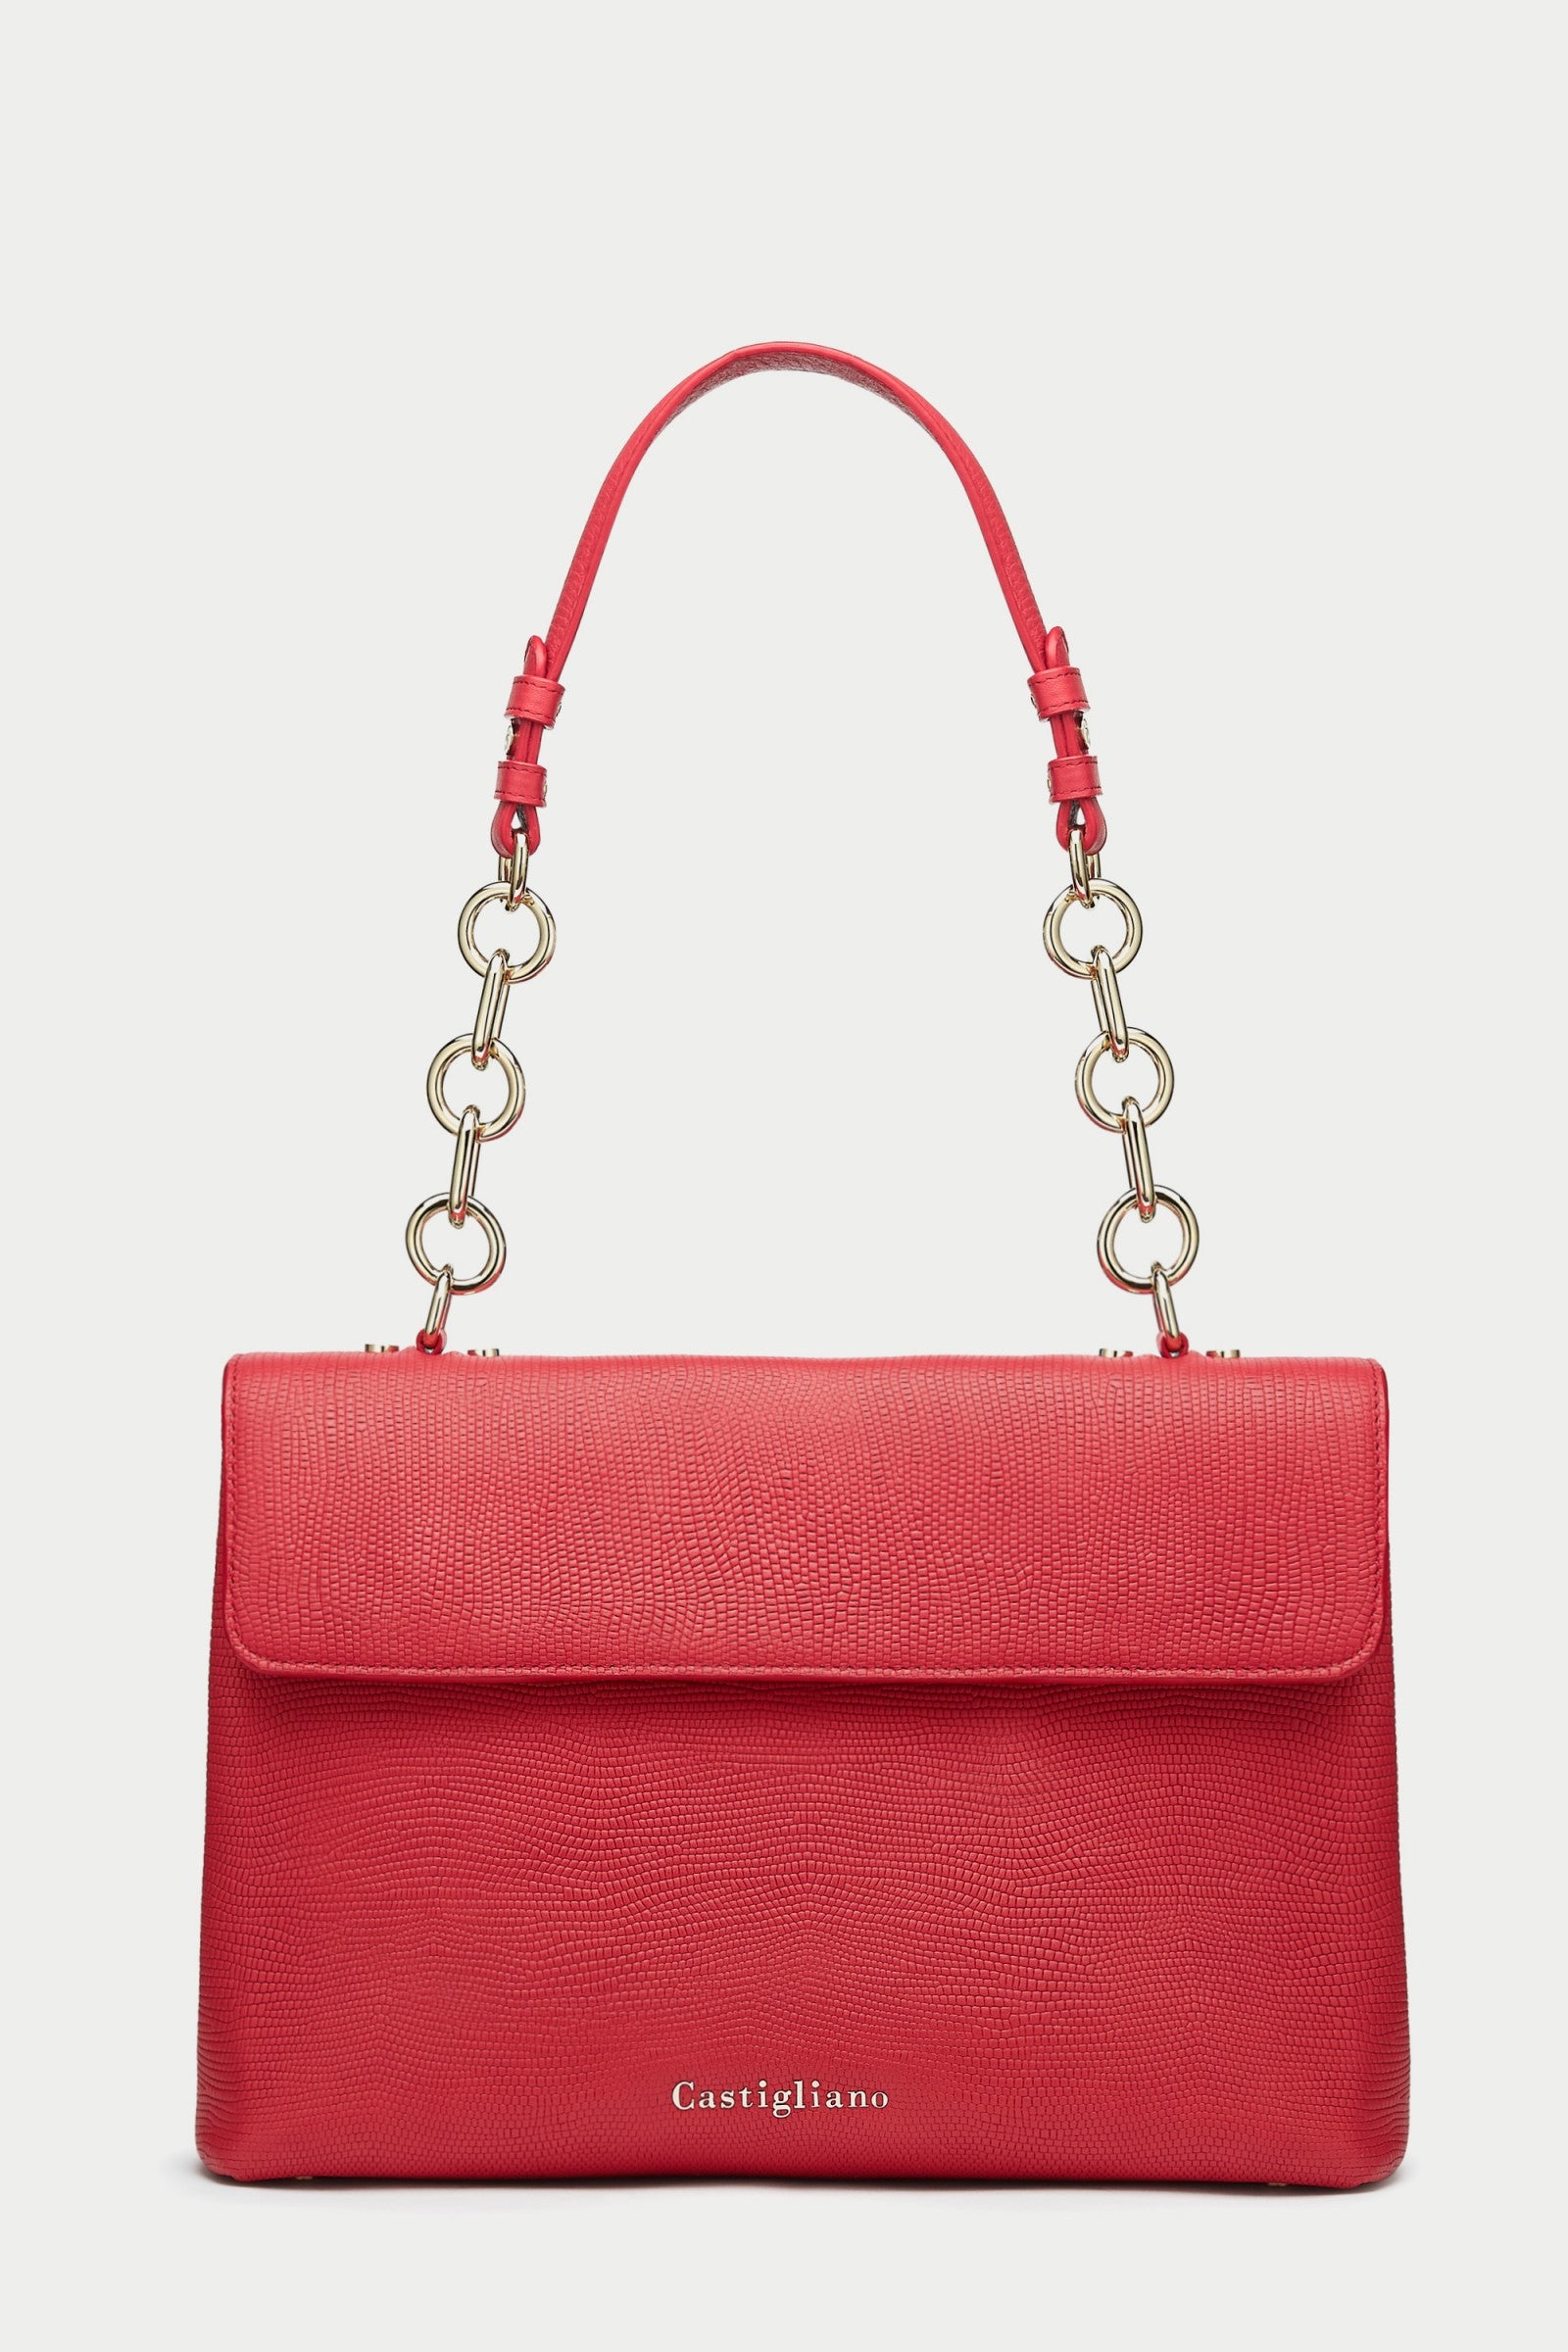 Briella LIPSTICK RED Leather Handbag